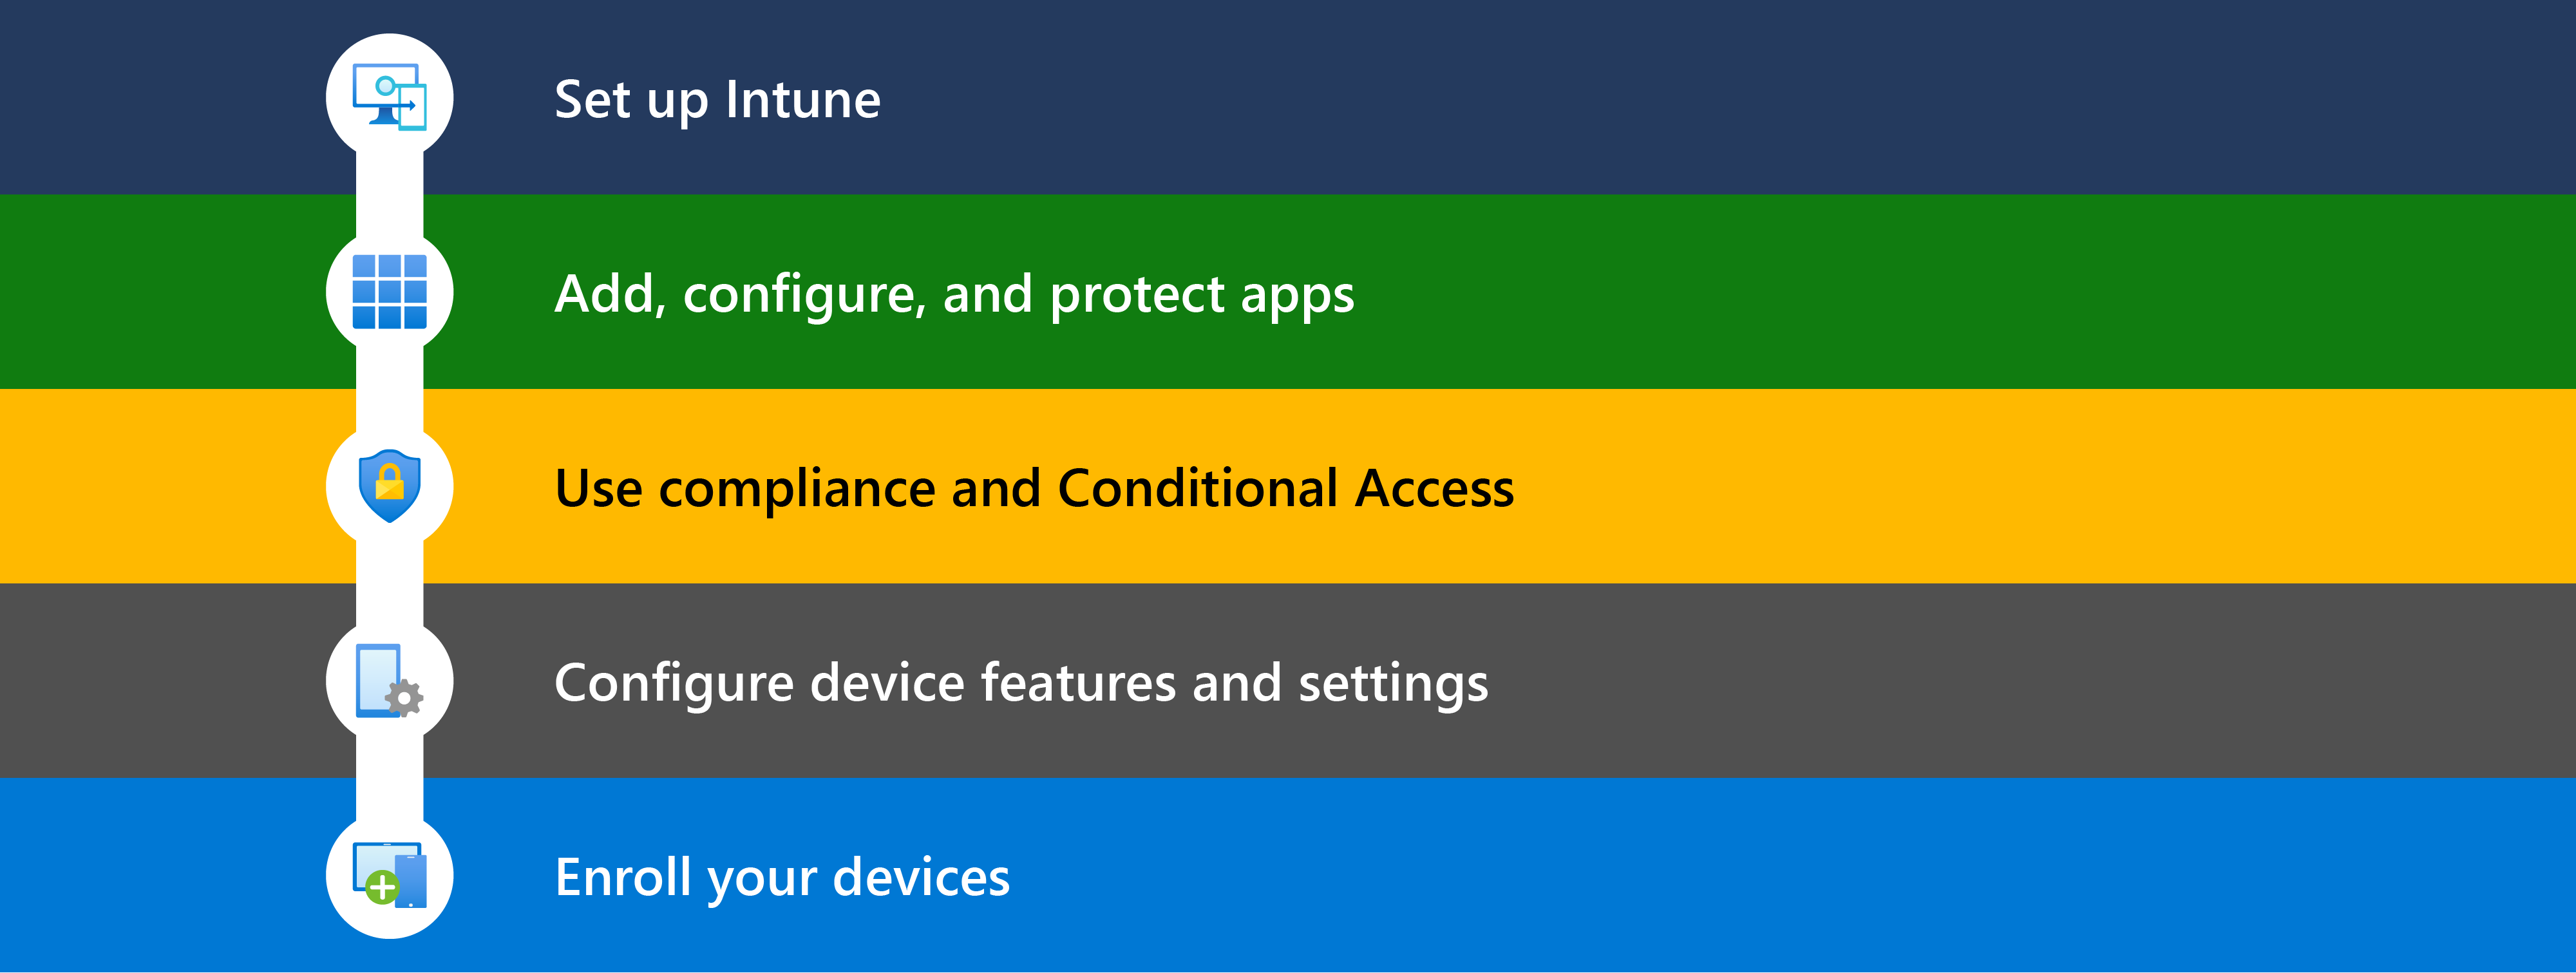 Diagrama que mostra as diferentes etapas para começar a Microsoft Intune, incluindo configurar, adicionar aplicativos, usar conformidade & acesso condicional, configurar recursos do dispositivo e, em seguida, registrar dispositivos a serem gerenciados.